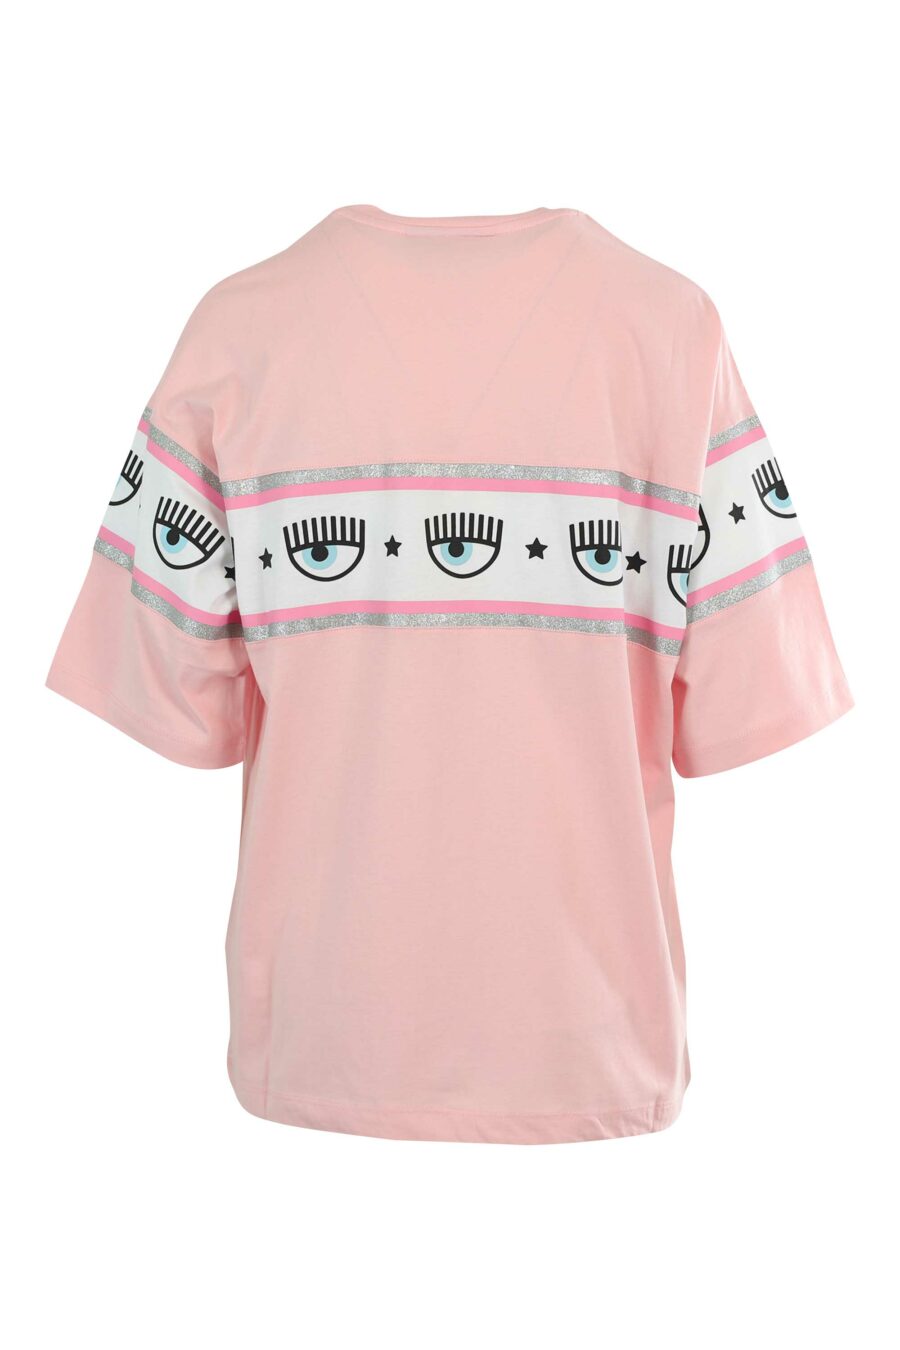 Camiseta rosa manga ancha con logo ojo en cinta - 8052672419422 3